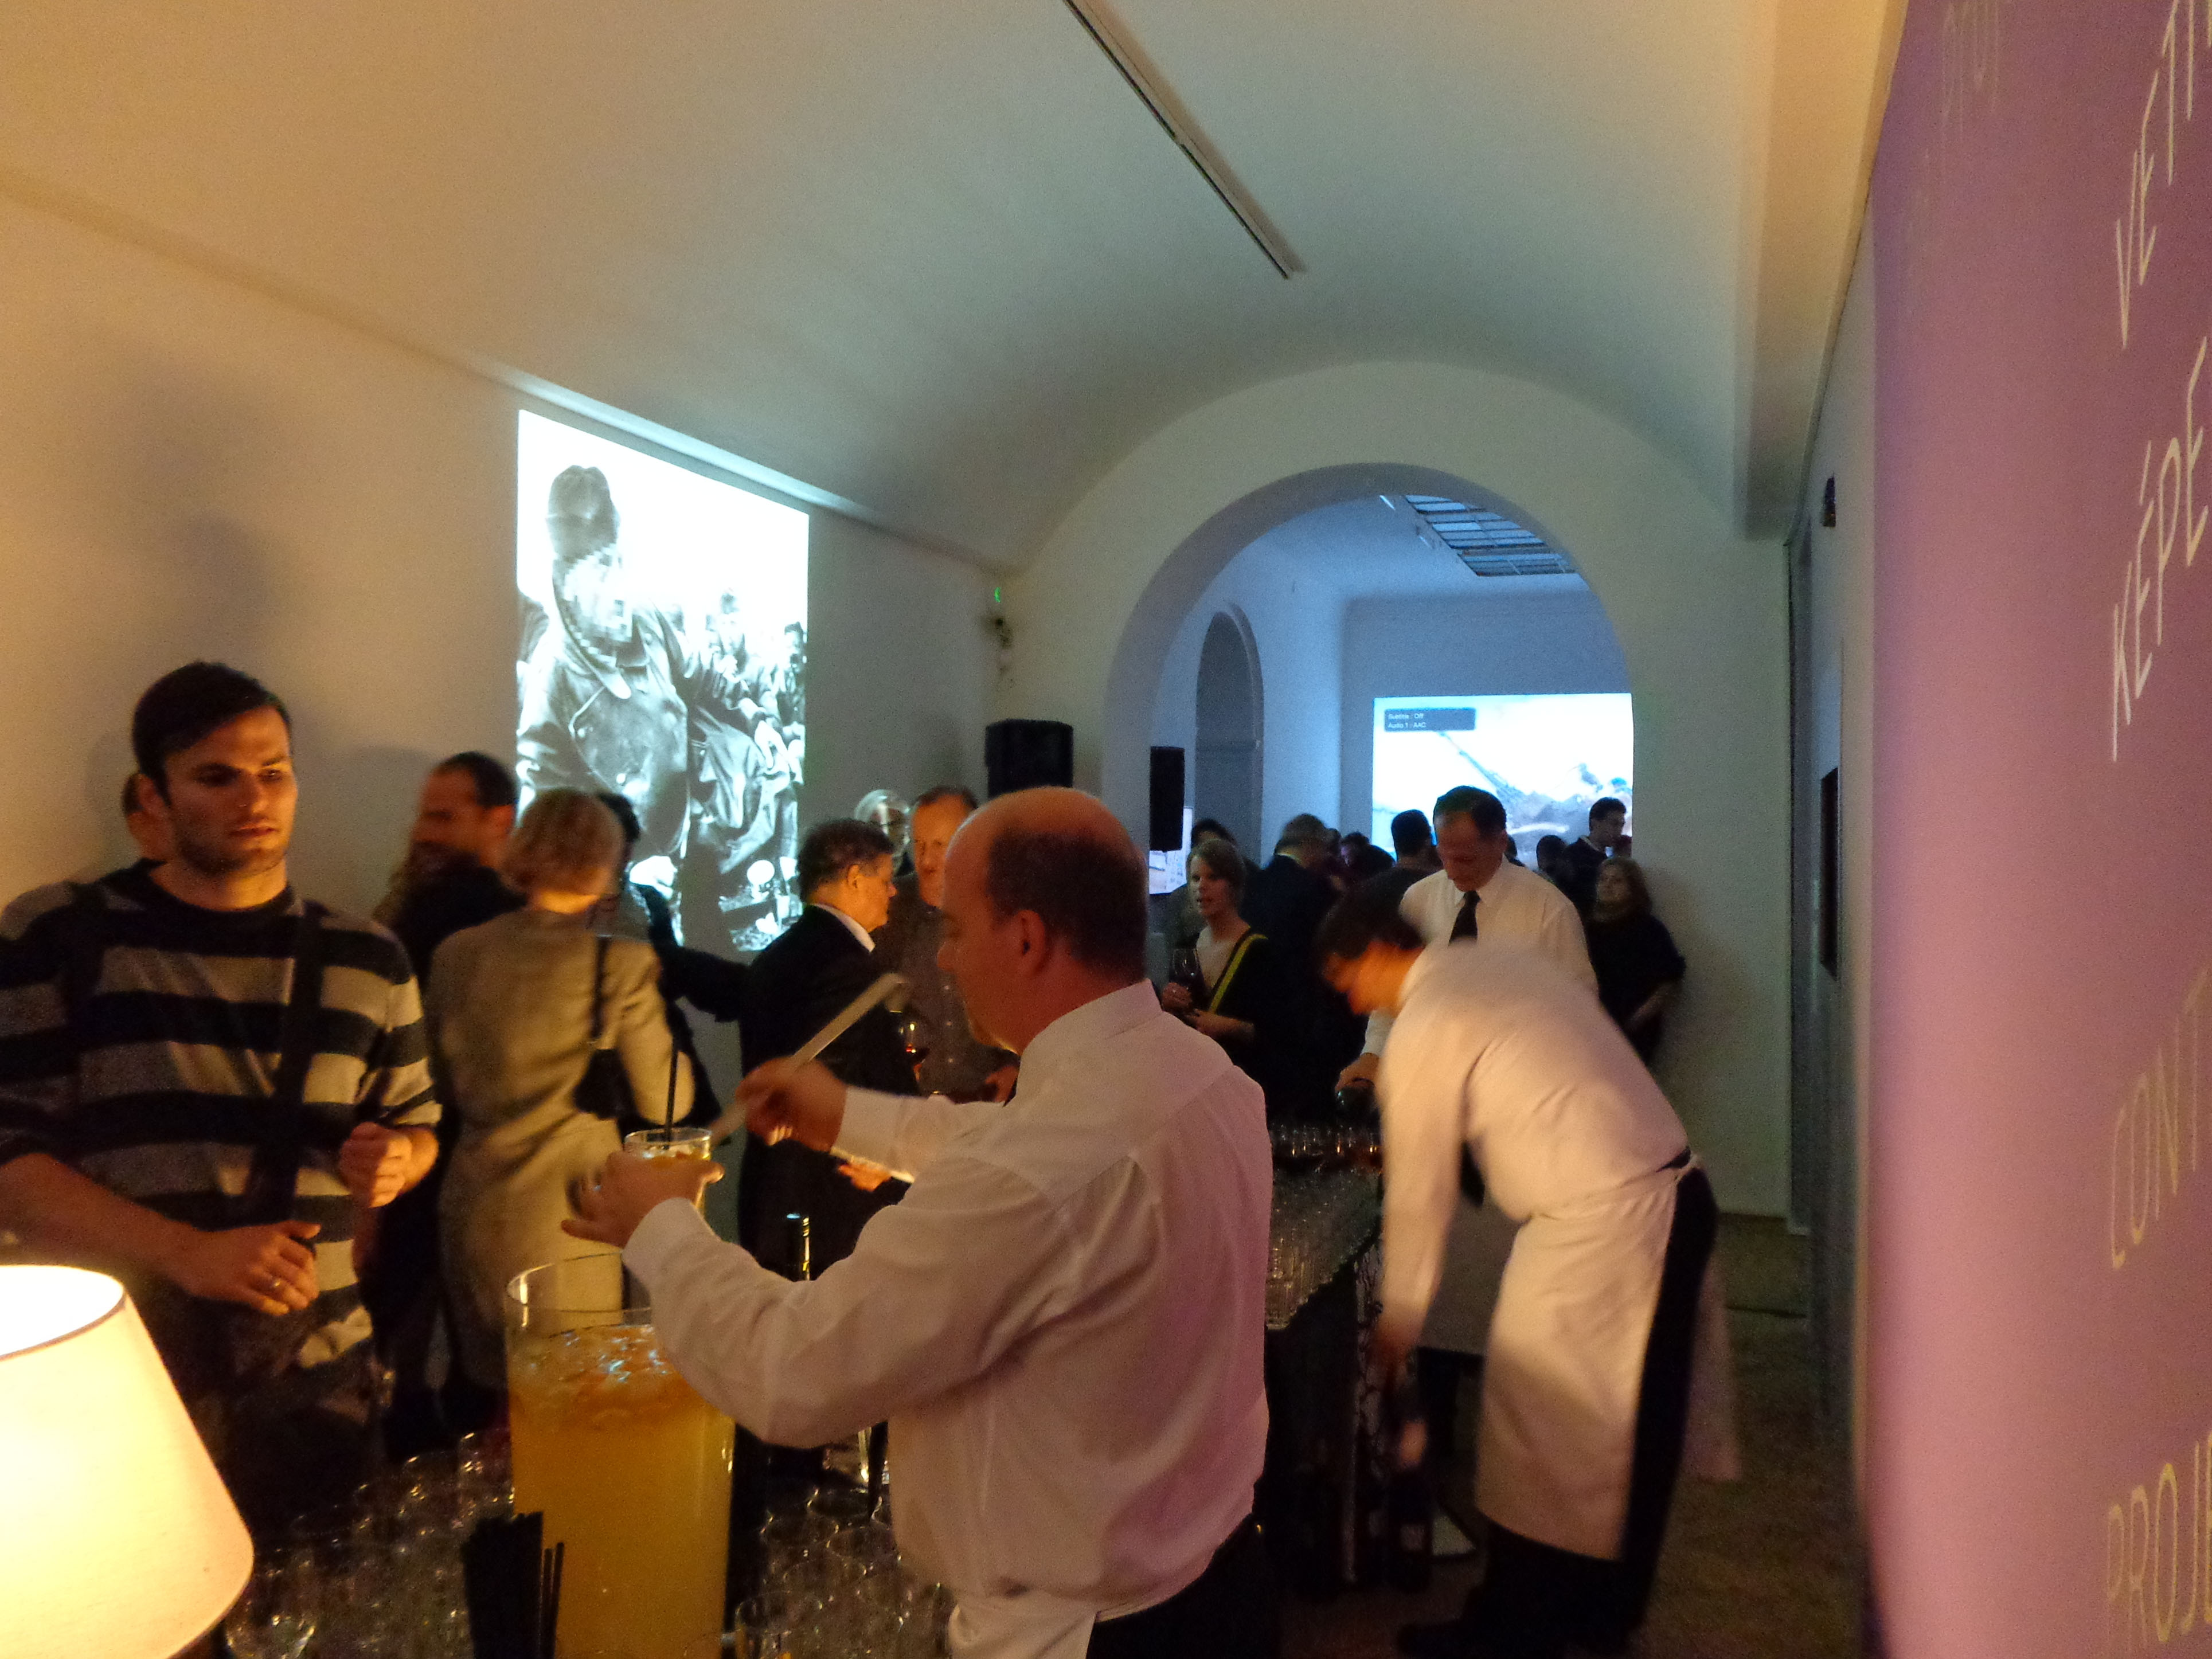 Einer der Ausstellungsräume während der Eröffnungsfeier. Links im Bild ist „Robert Capa‘s Masterworks – Politically Correct and Censored Edition“, der Beitrag von István Szőnyi, zu sehen.